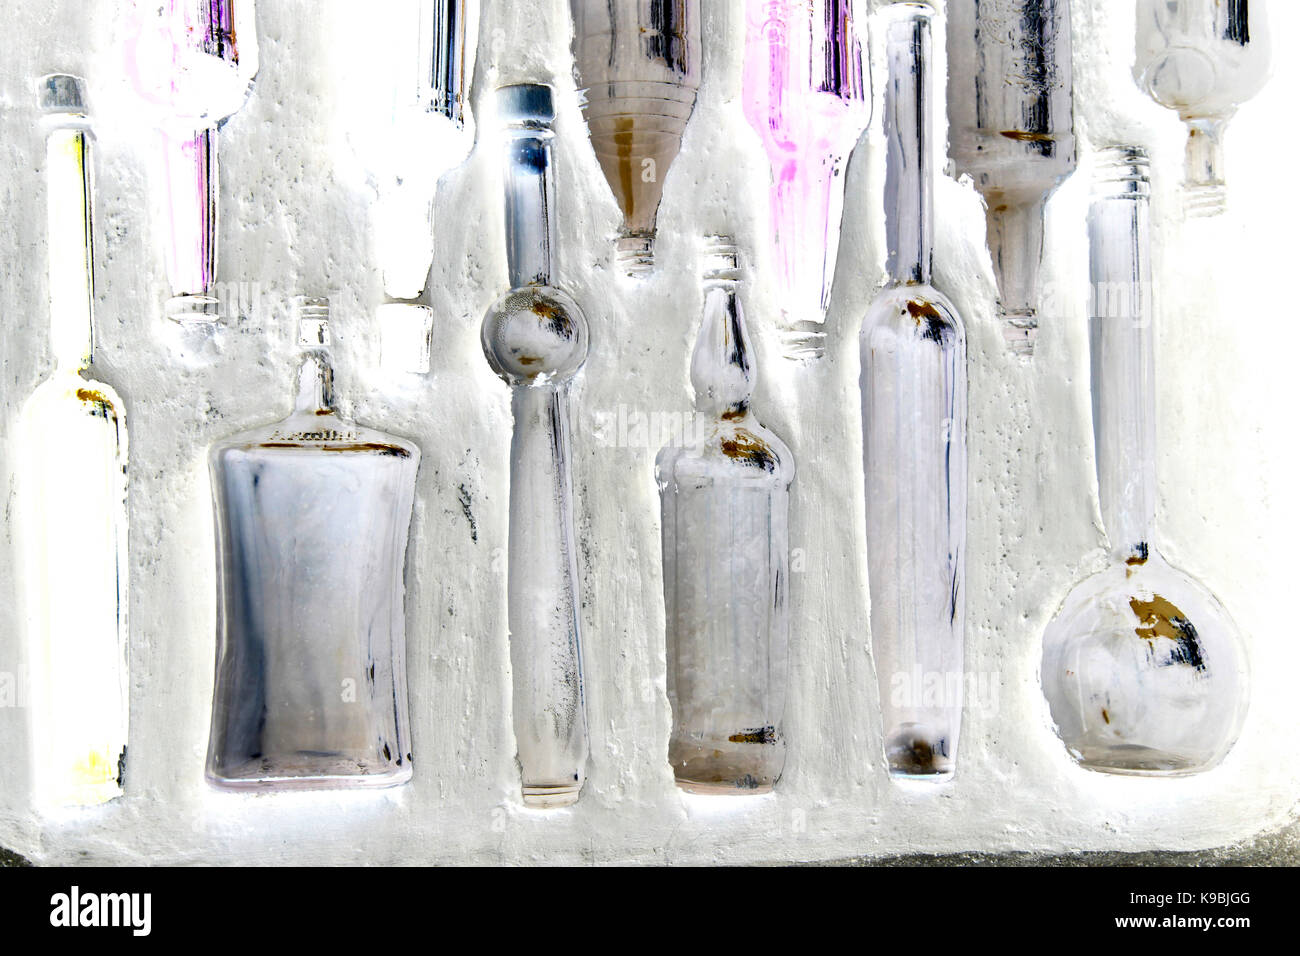 Flaschen in einer Wand - Glasflaschen eingebettet in einer weiß getünchten Wand Stockfoto